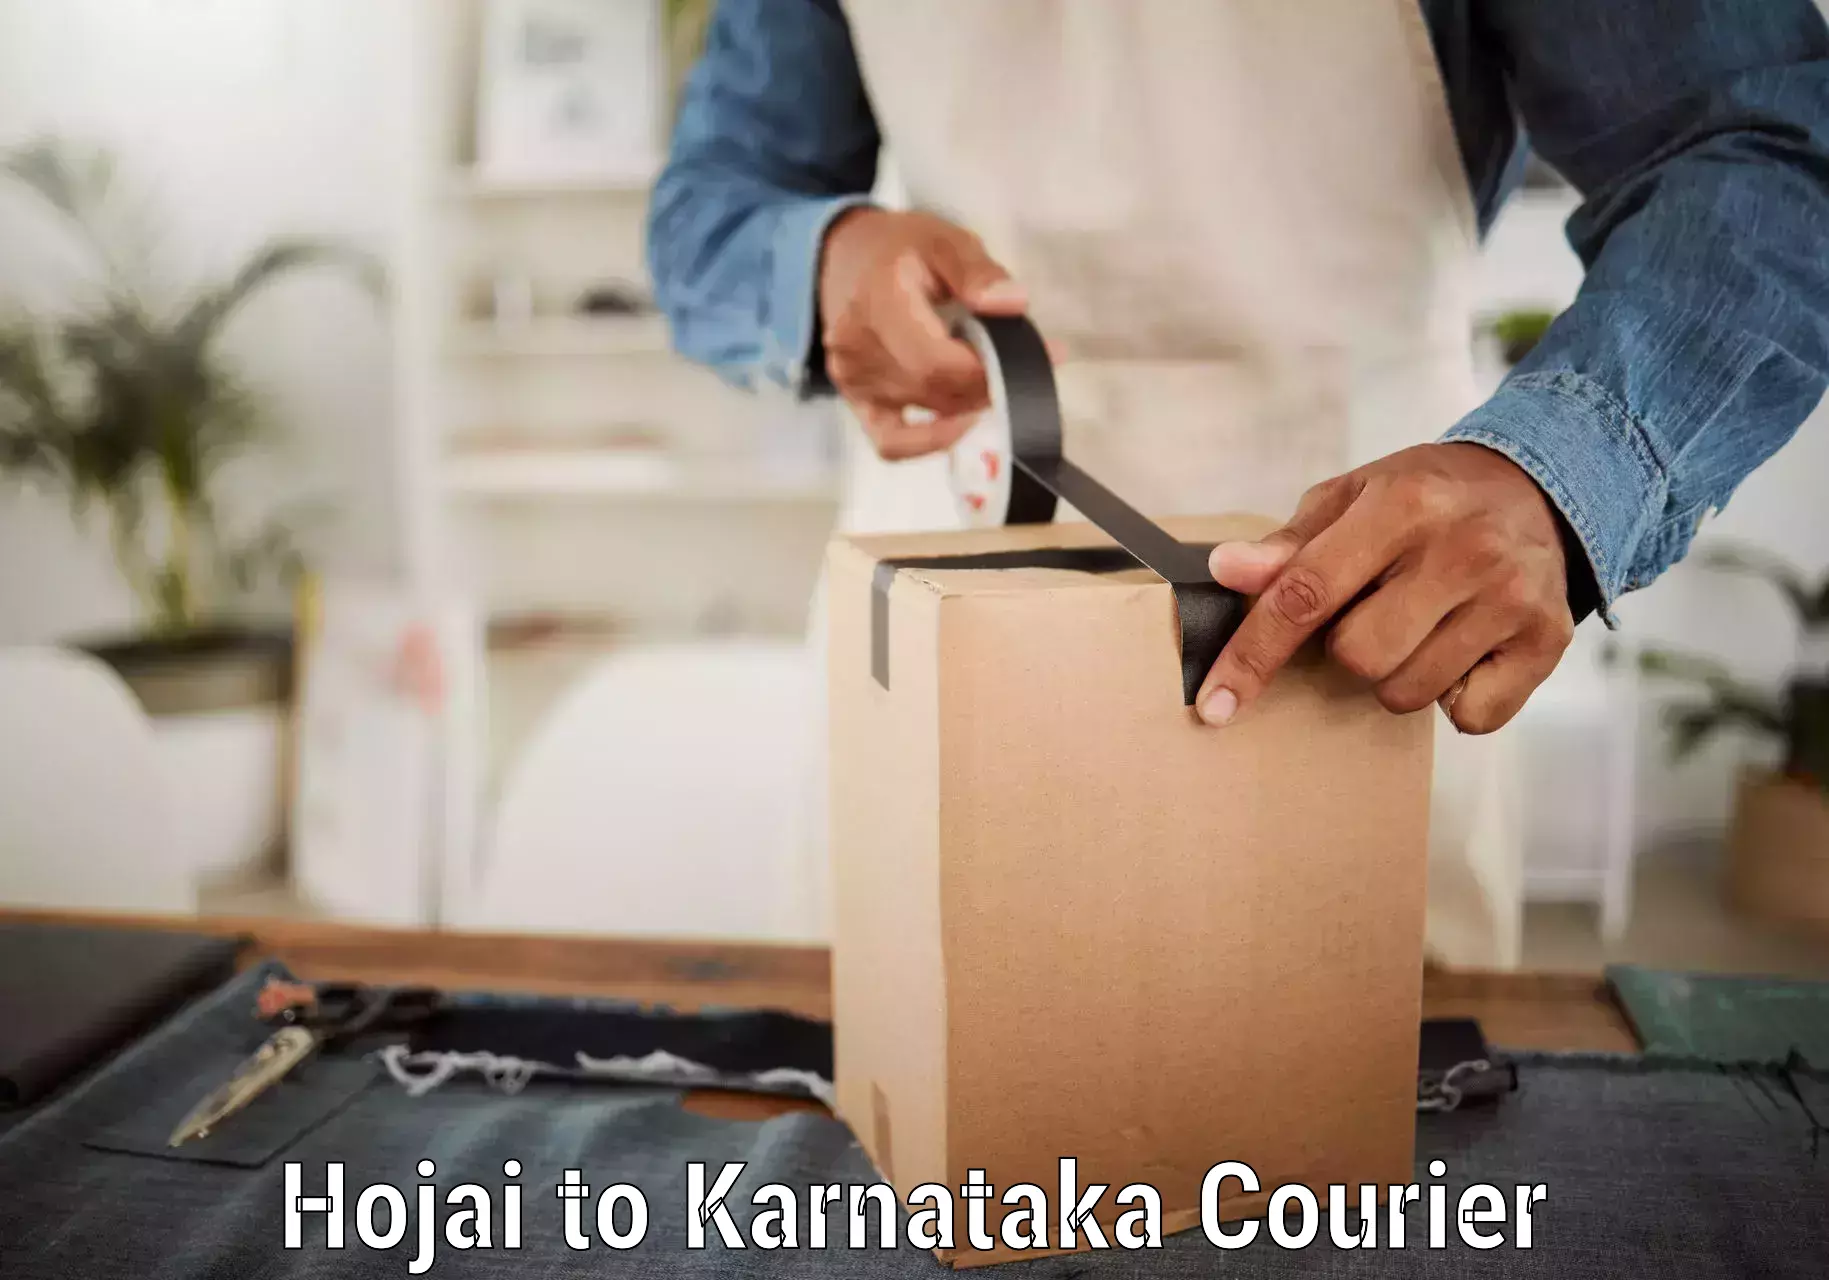 Courier service comparison Hojai to Mangalore Port